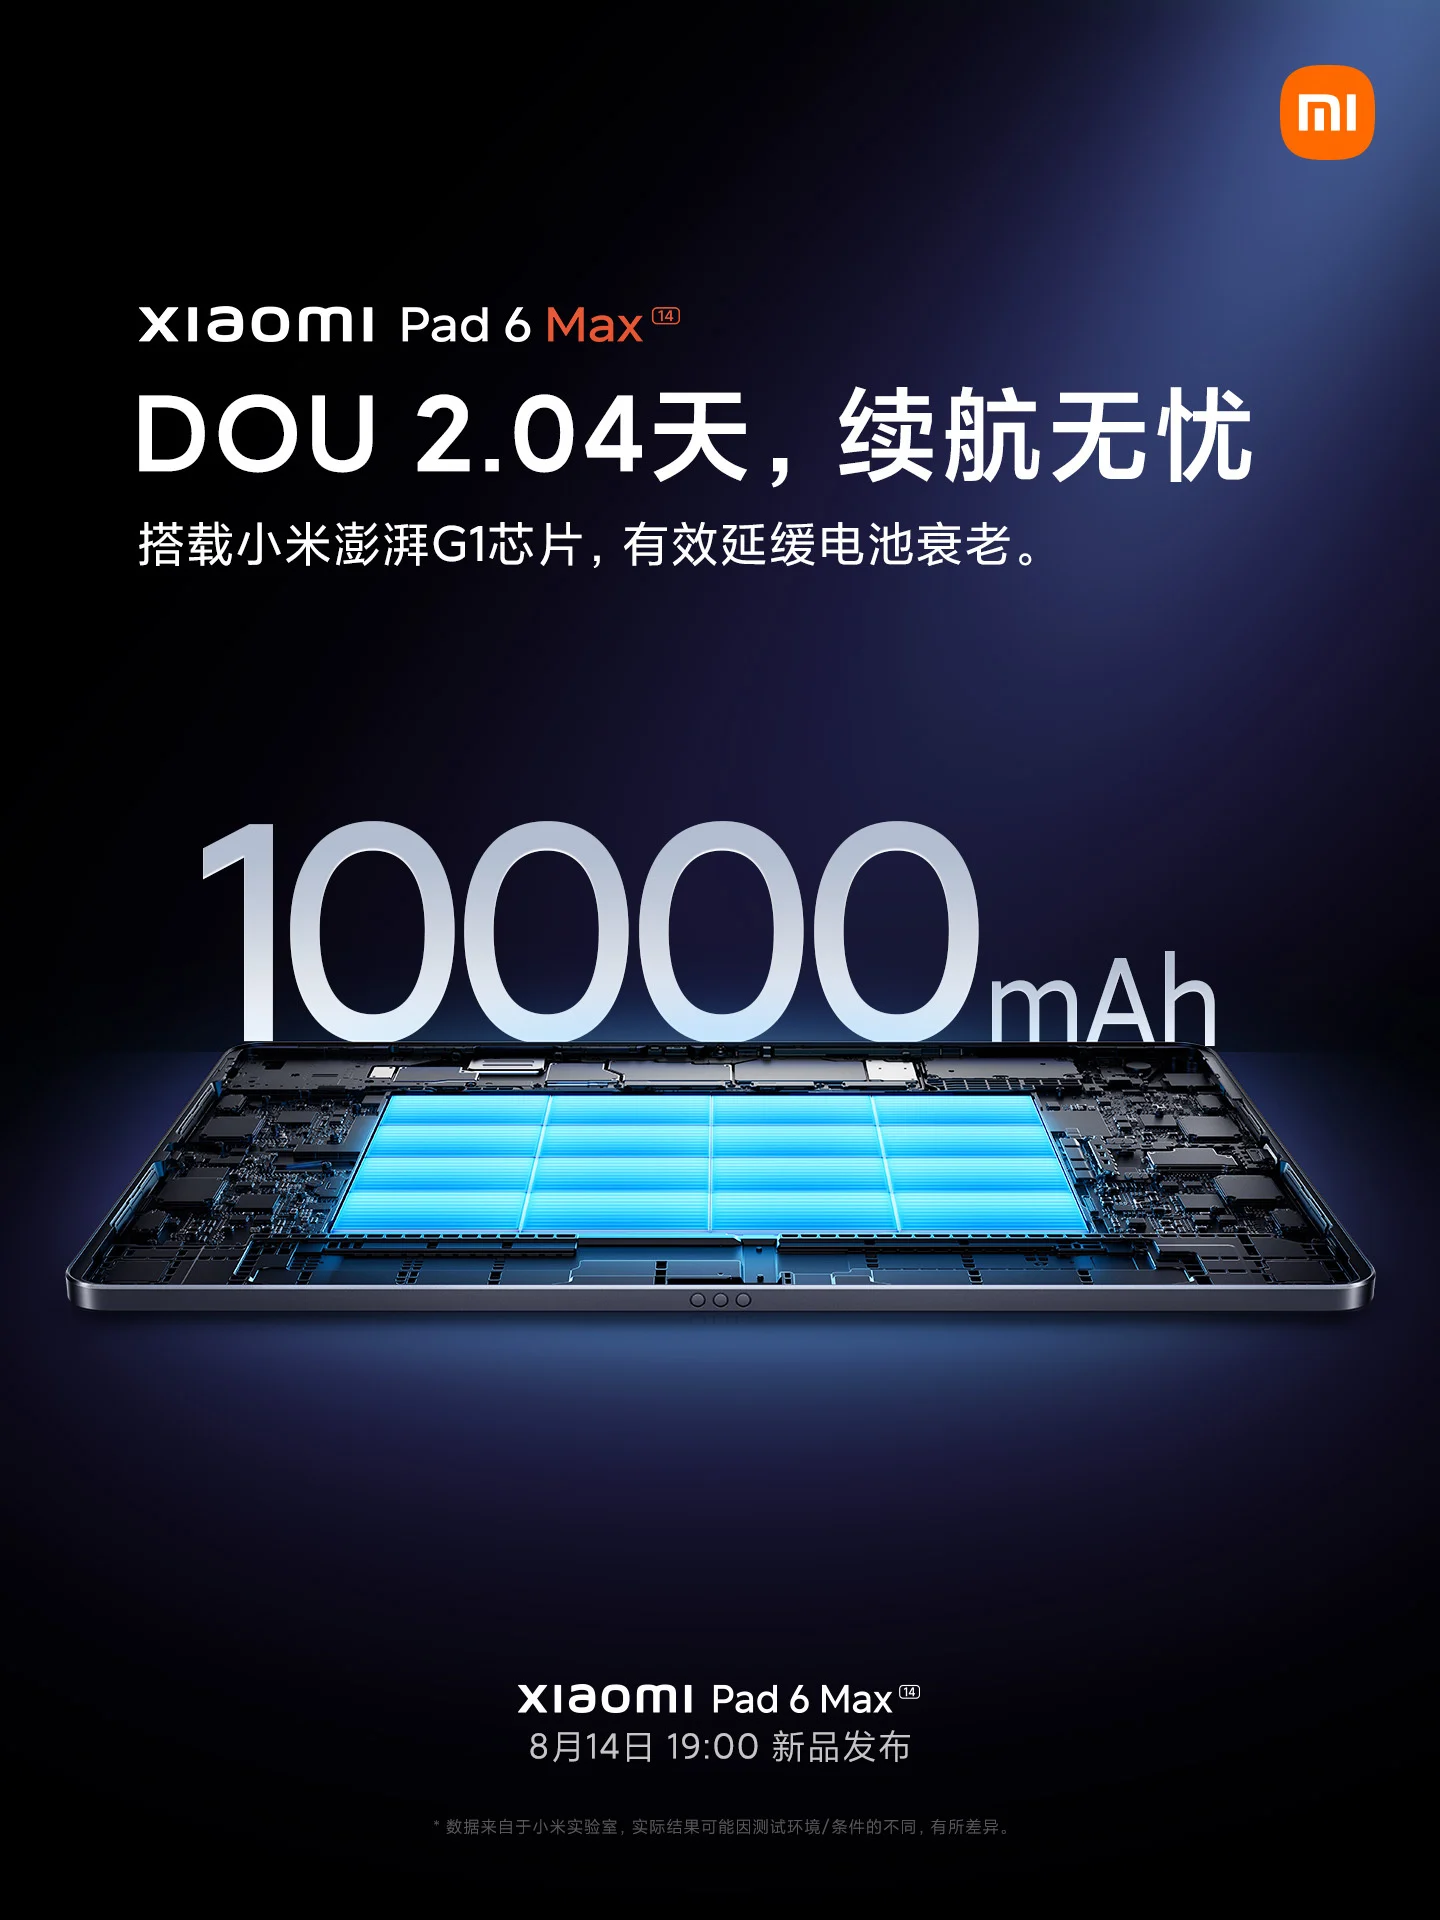 Розмір дисплея Xiaomi Pad 6 Max, чипсет, акумулятор та інші подробиці підтверджені офіційно